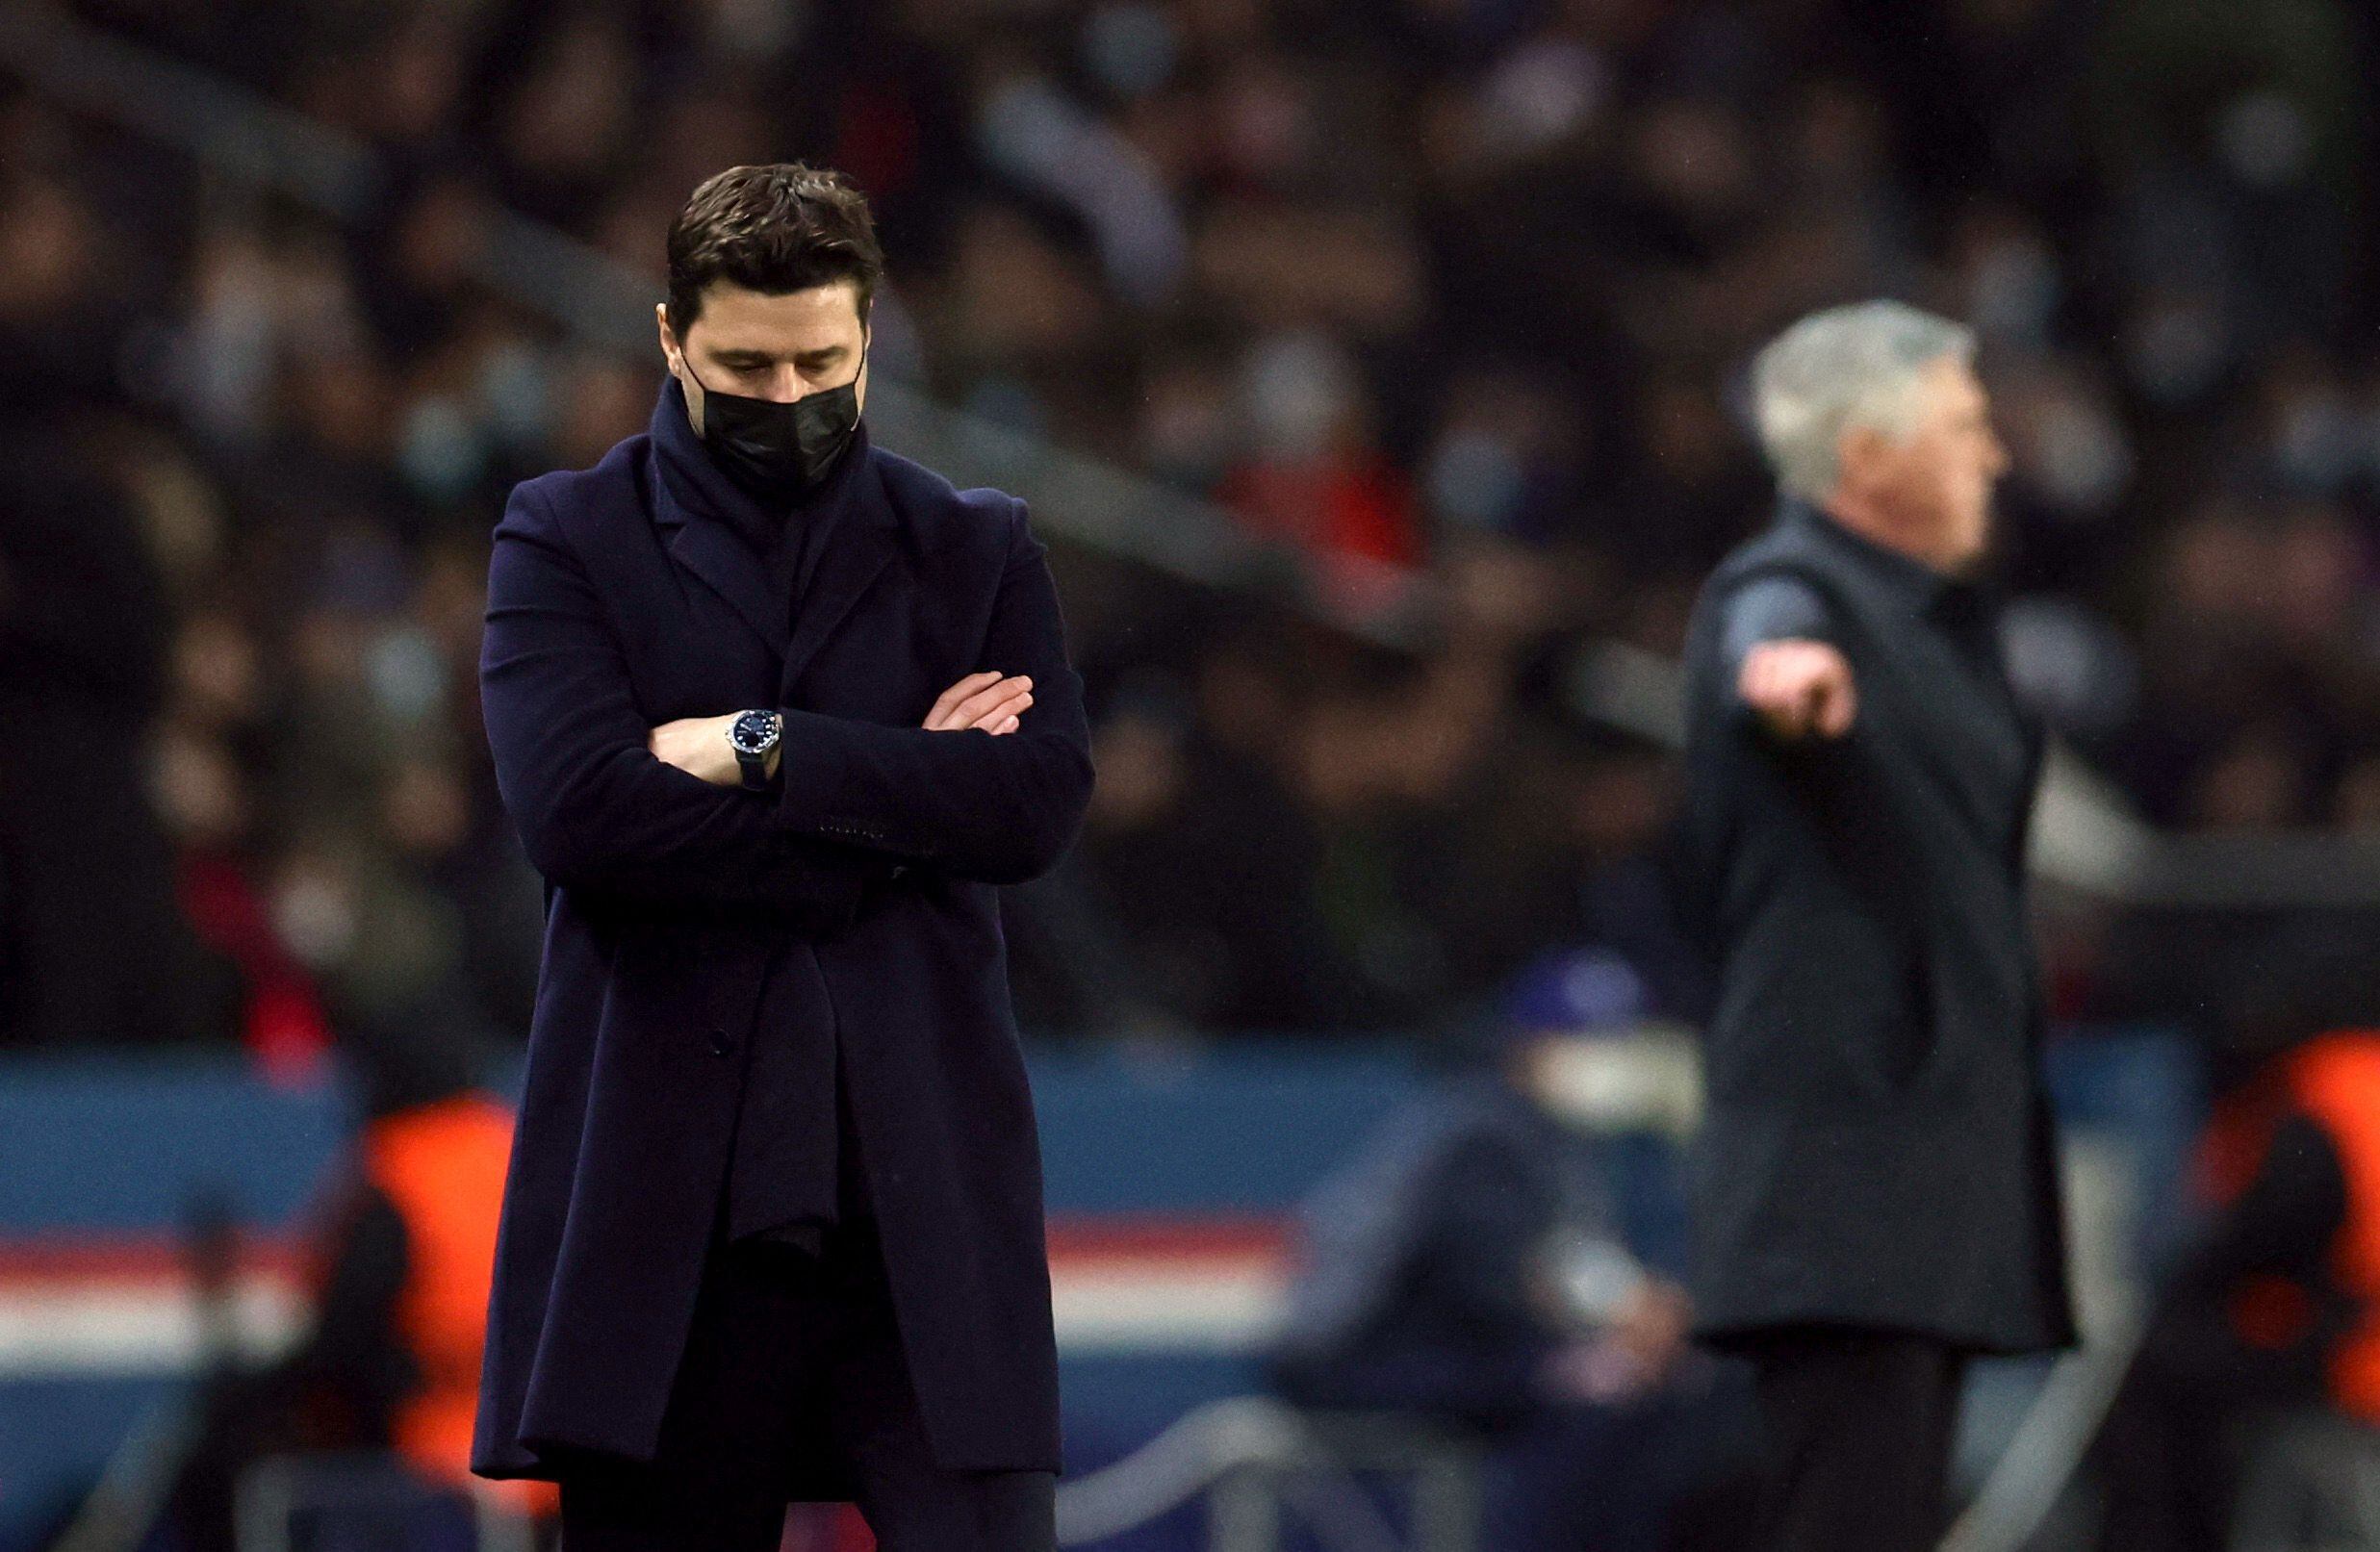 La decepción de Mauricio Pochettino por la inesperada remontada del Real Madrid fue notoria (Foto: Reuters)